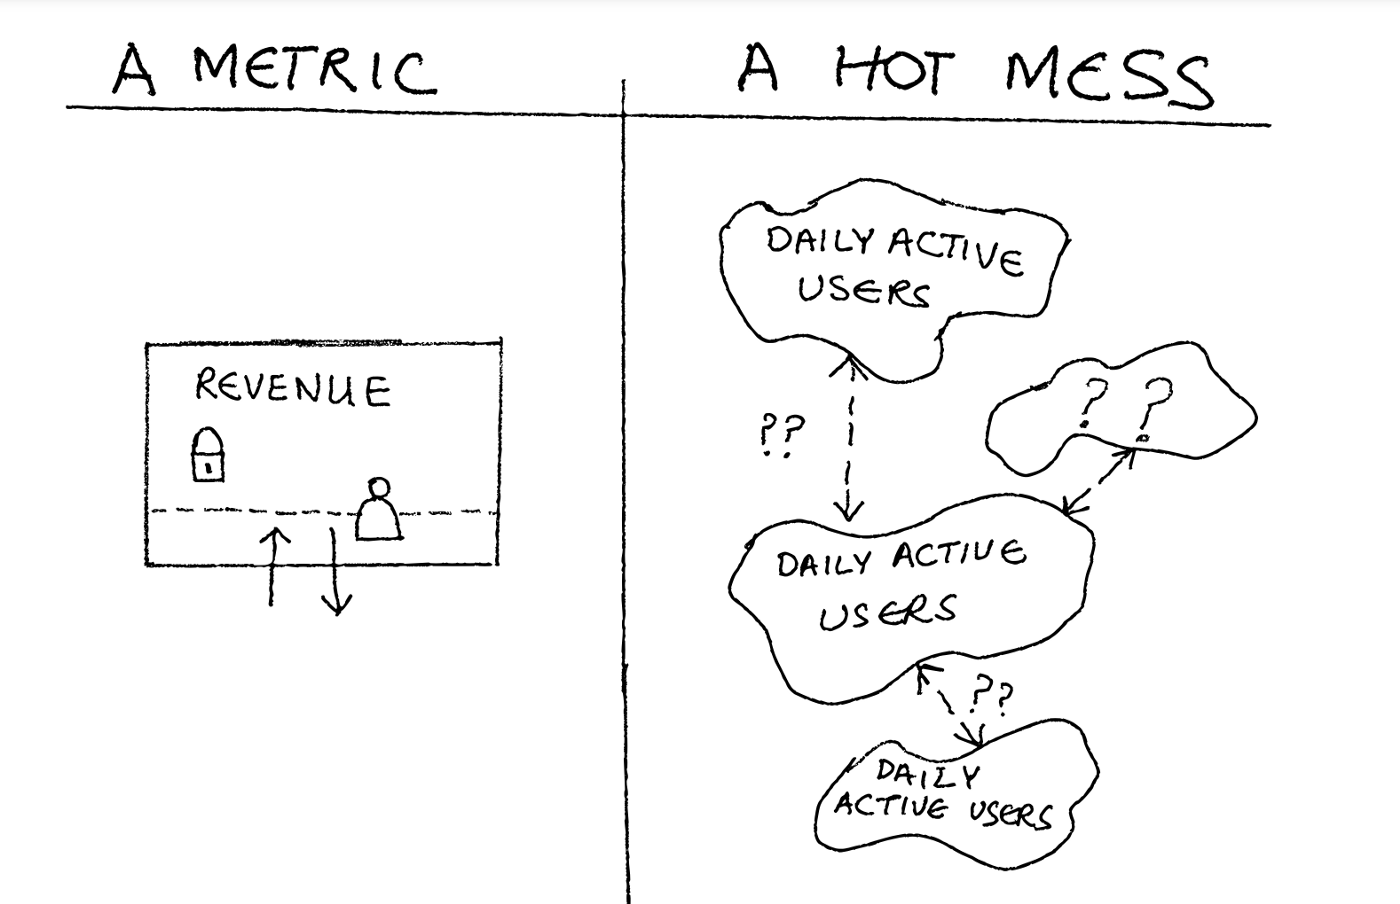 metric vs hot mess